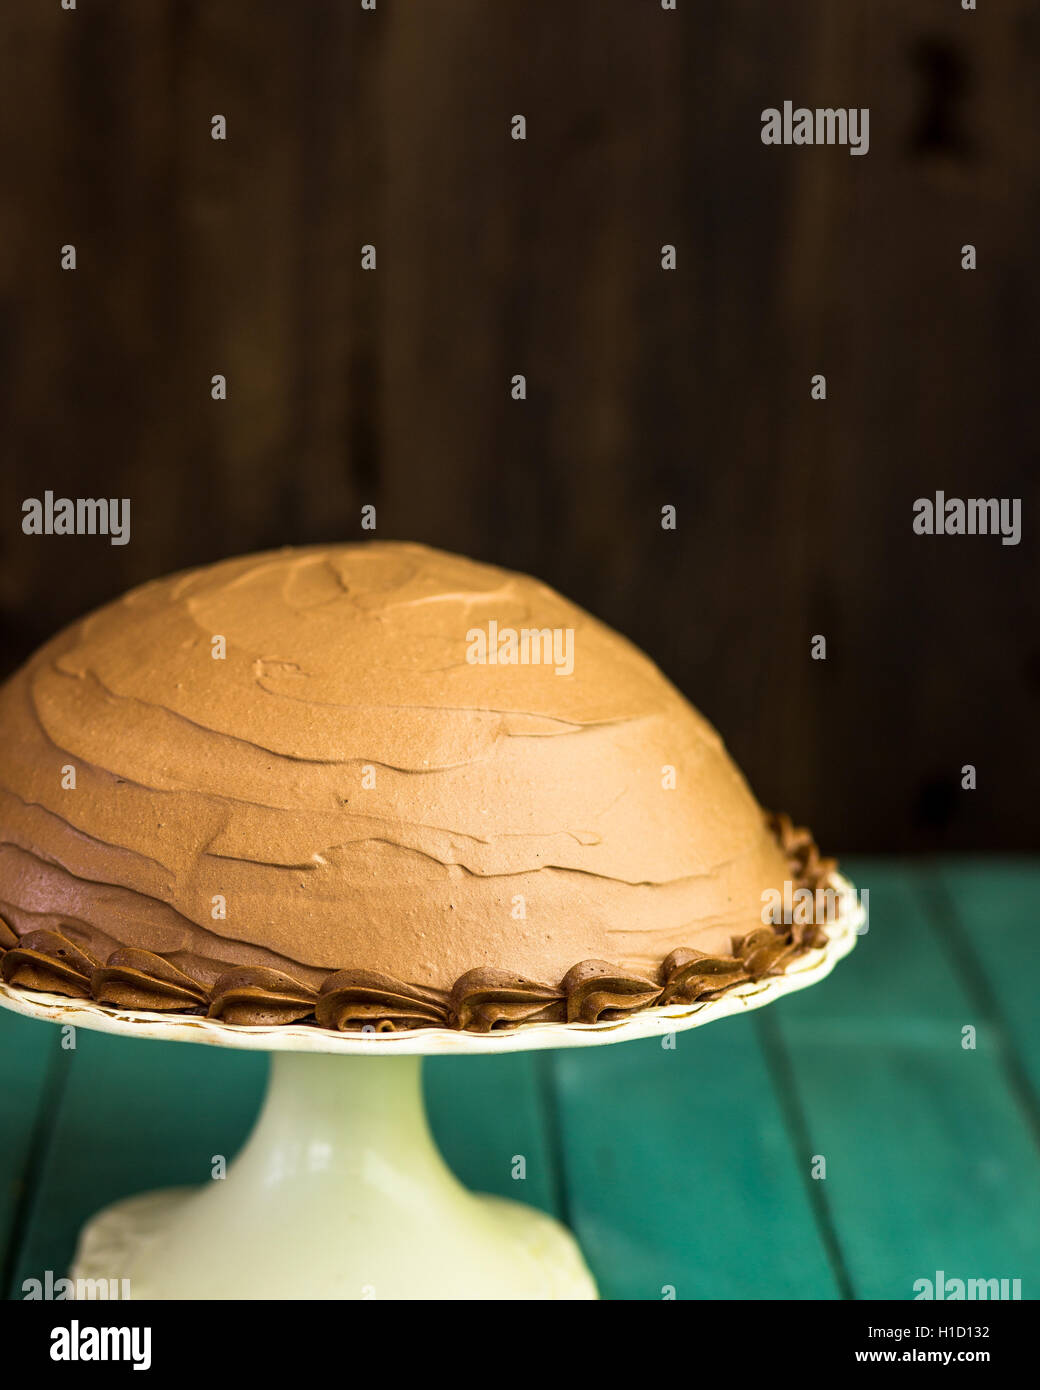 Caffè al Cioccolato nocciola mezza sfera torta con tubazioni decorativo sulla torta bianca stand e scuro dello sfondo turchese Foto Stock